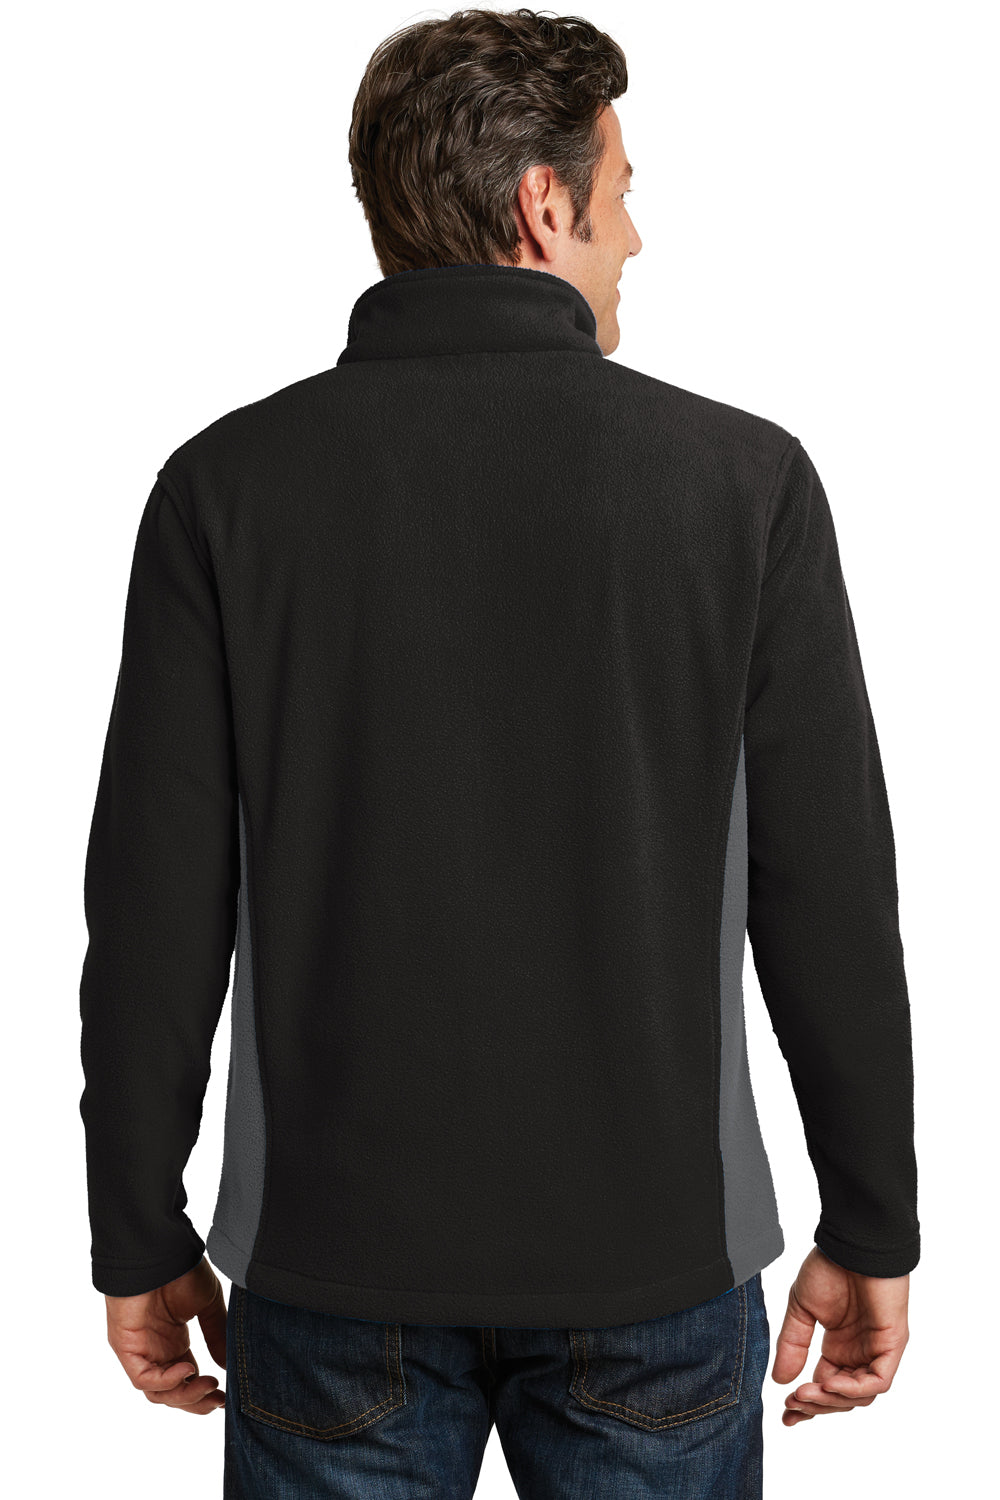 Port Authority F216 Mens Full Zip Fleece Jacket Black/Grey Back